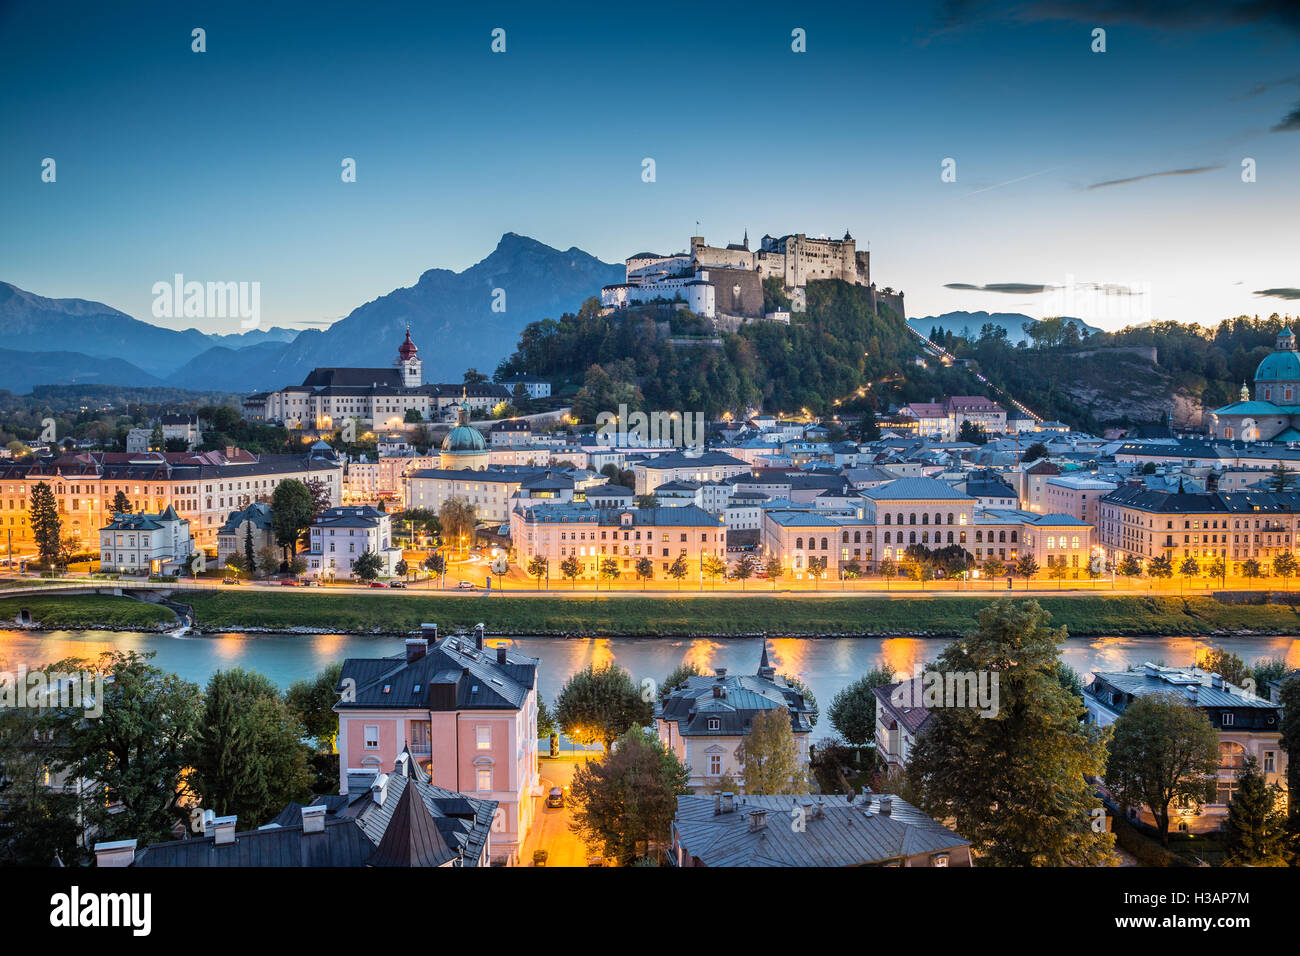 L'affichage classique de la vieille ville de Salzbourg avec la Forteresse de Hohensalzburg, au crépuscule, Salzburger Land, Autriche Banque D'Images